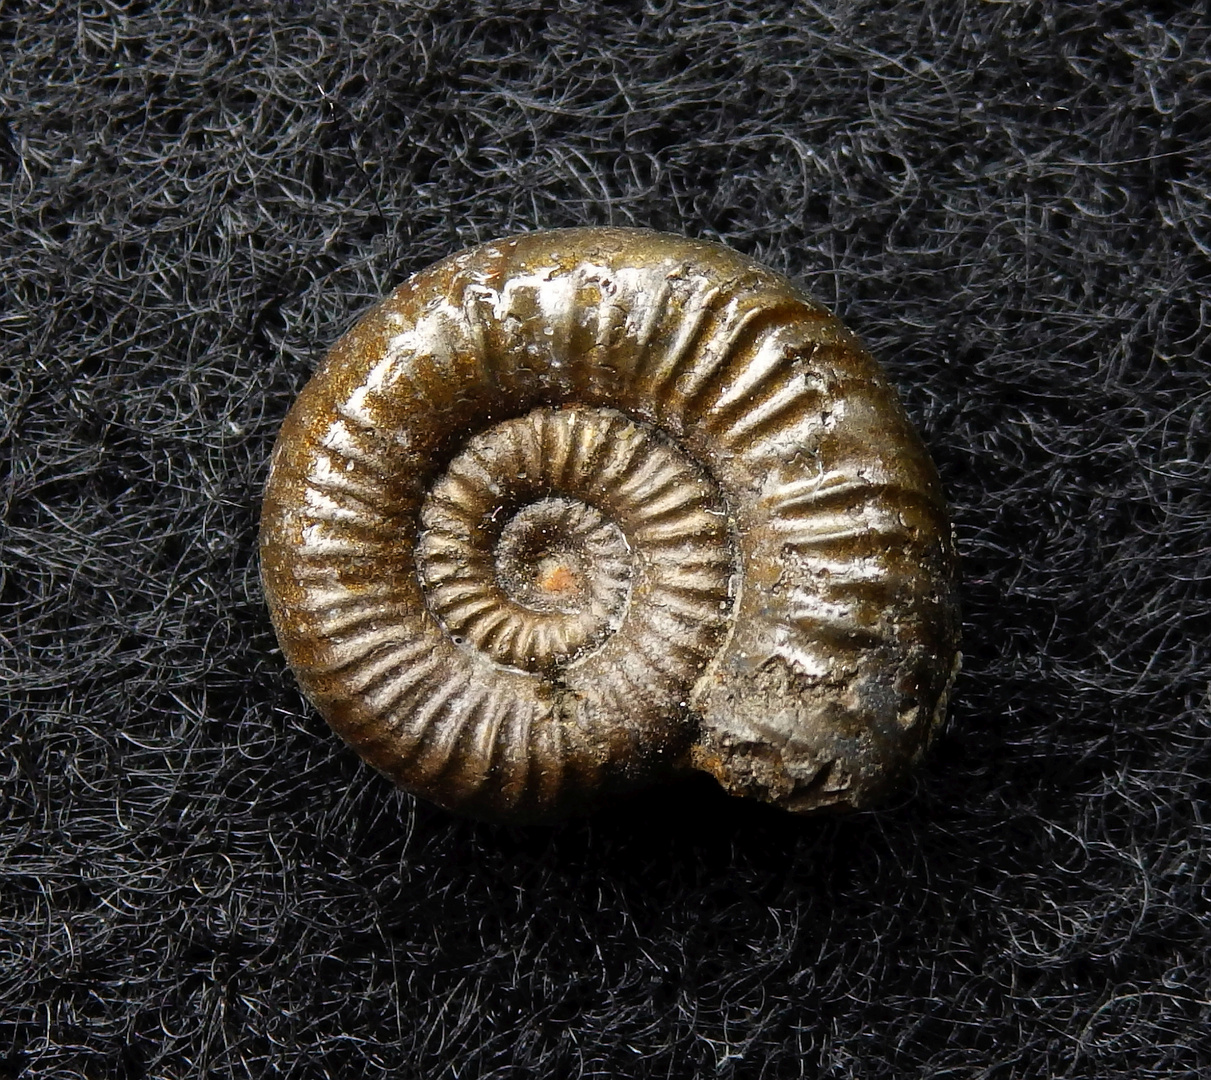 Pyritisierter Ammonit aus der Jurazeit - Polymorphites quadratus